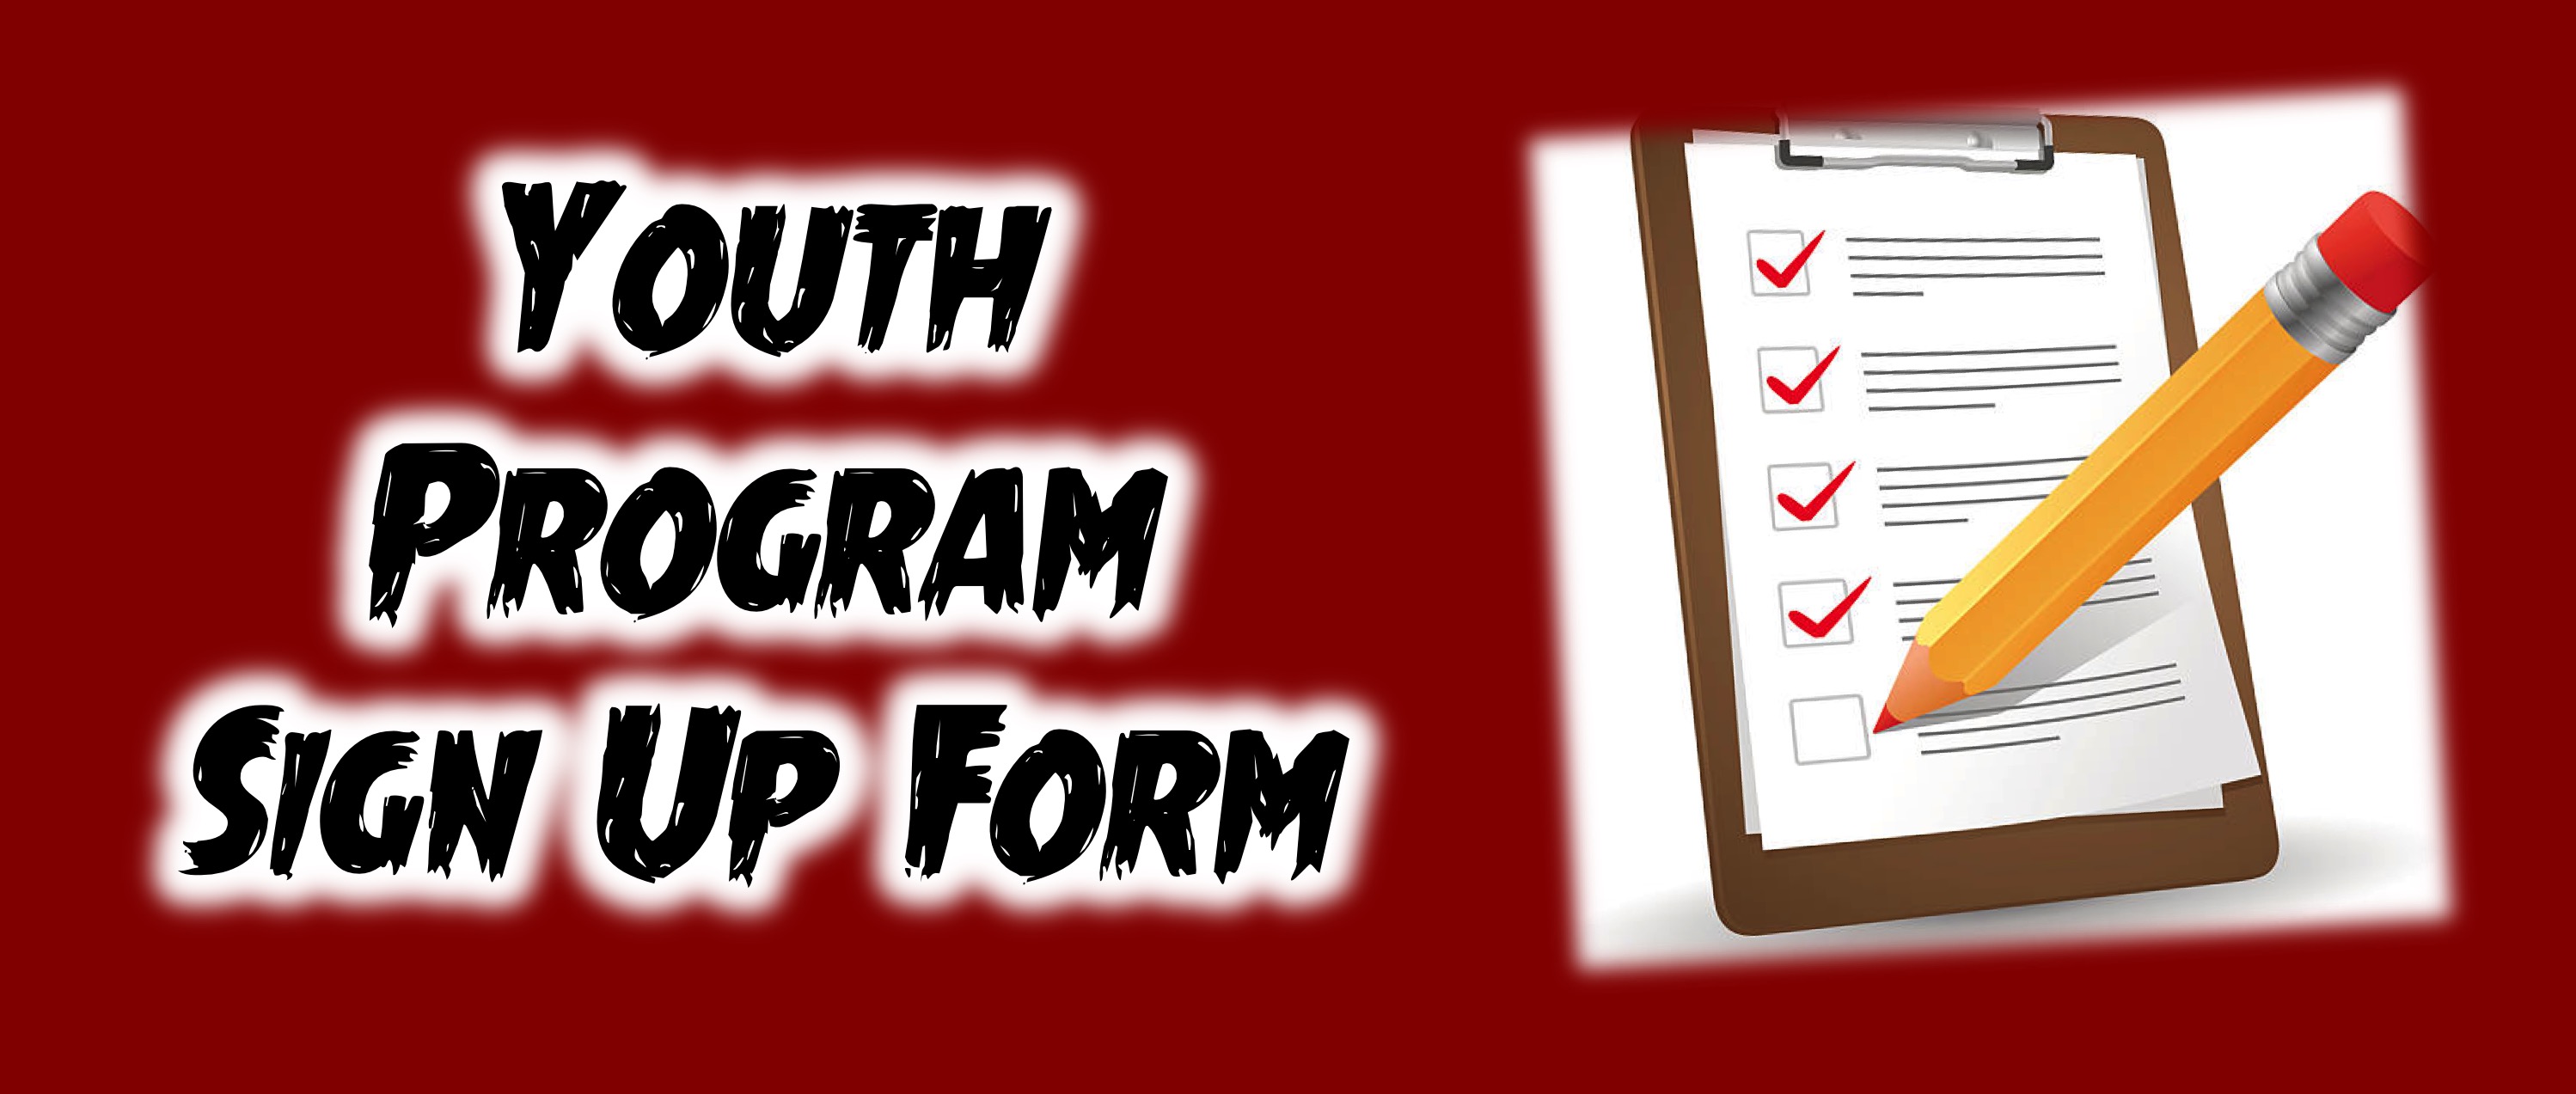 Youth Program Sign Up Form link